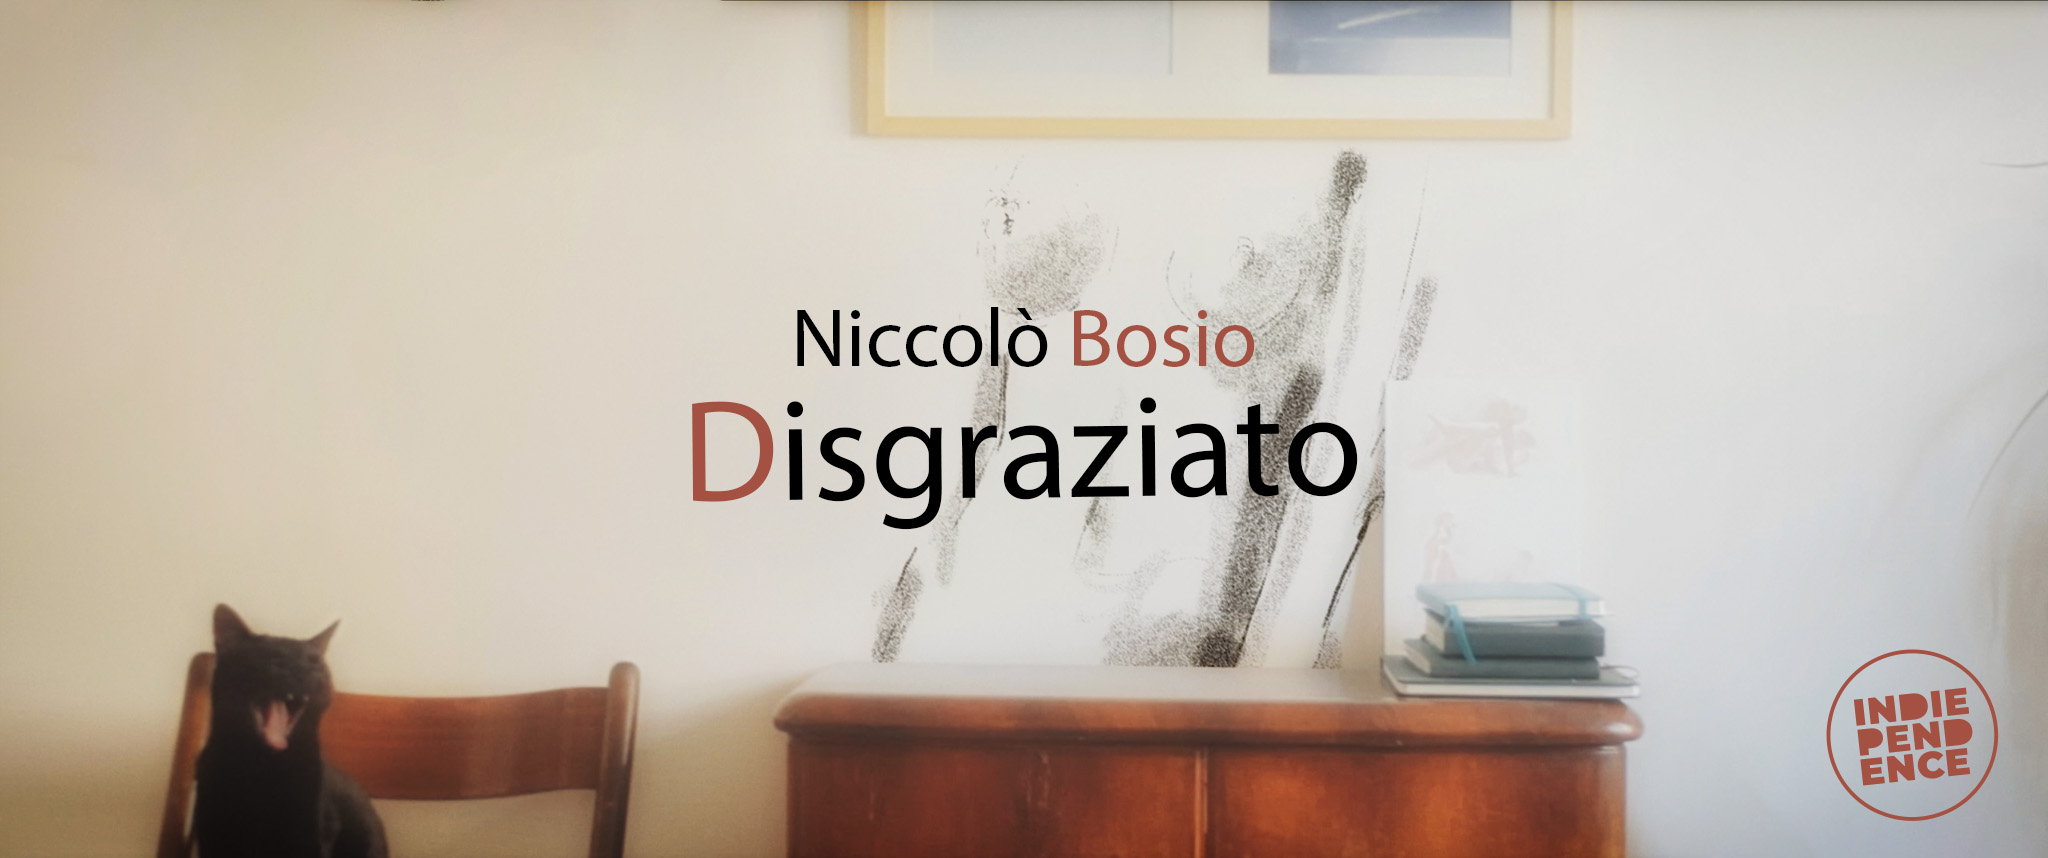 NB_Disgraziato